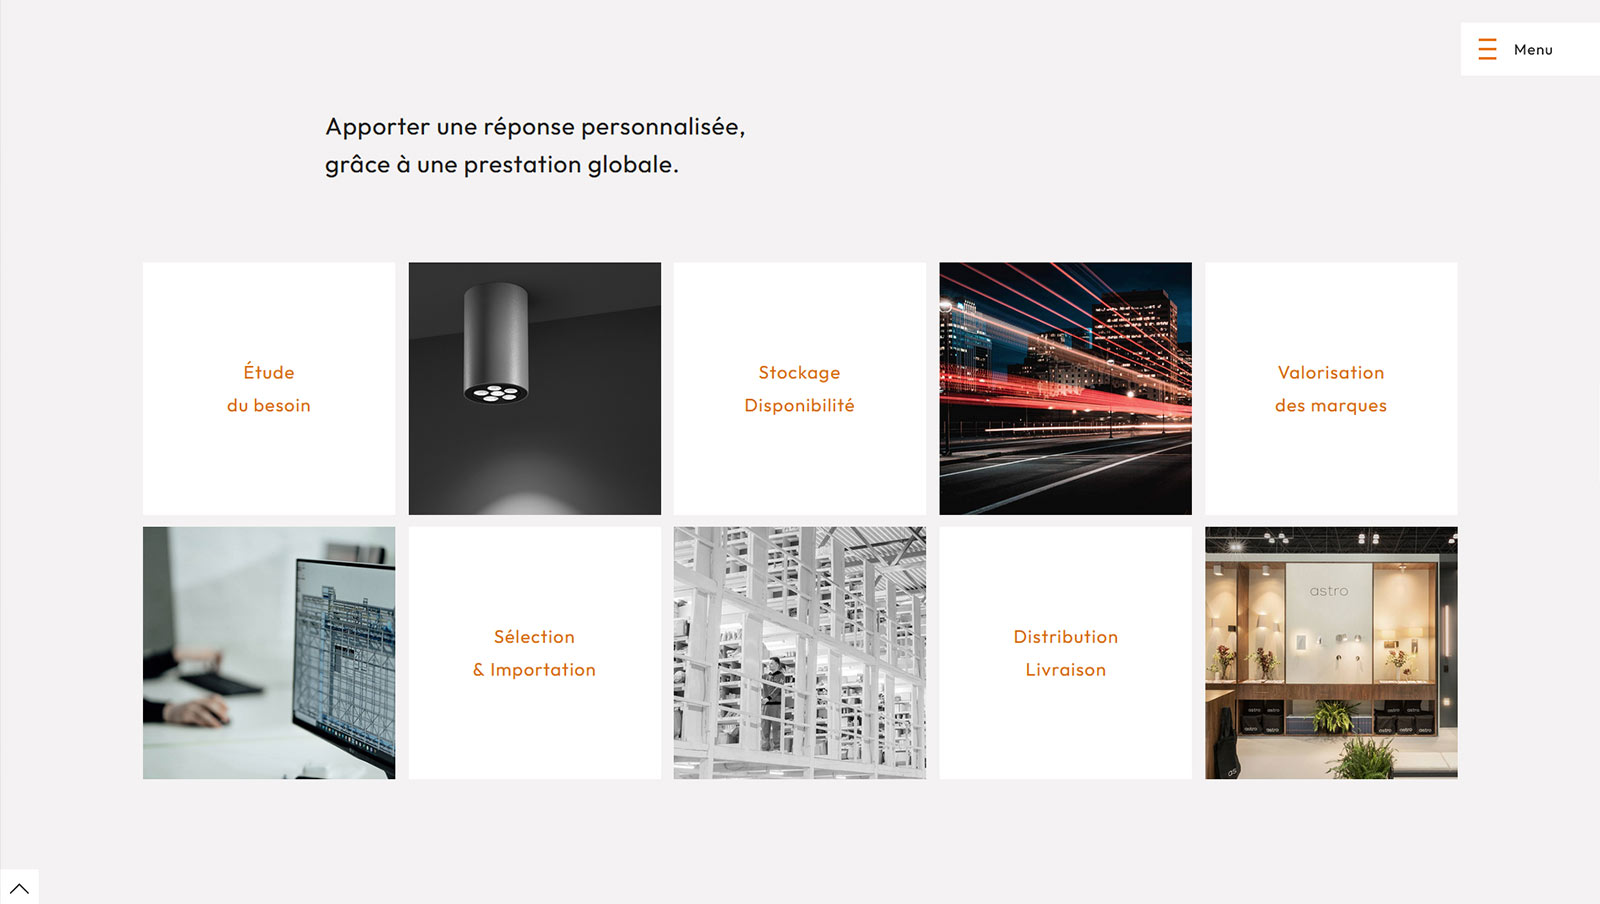 Création du site internet pour Rê Majeur, éclairage architectural, par Hervé Augoyat à Lyon